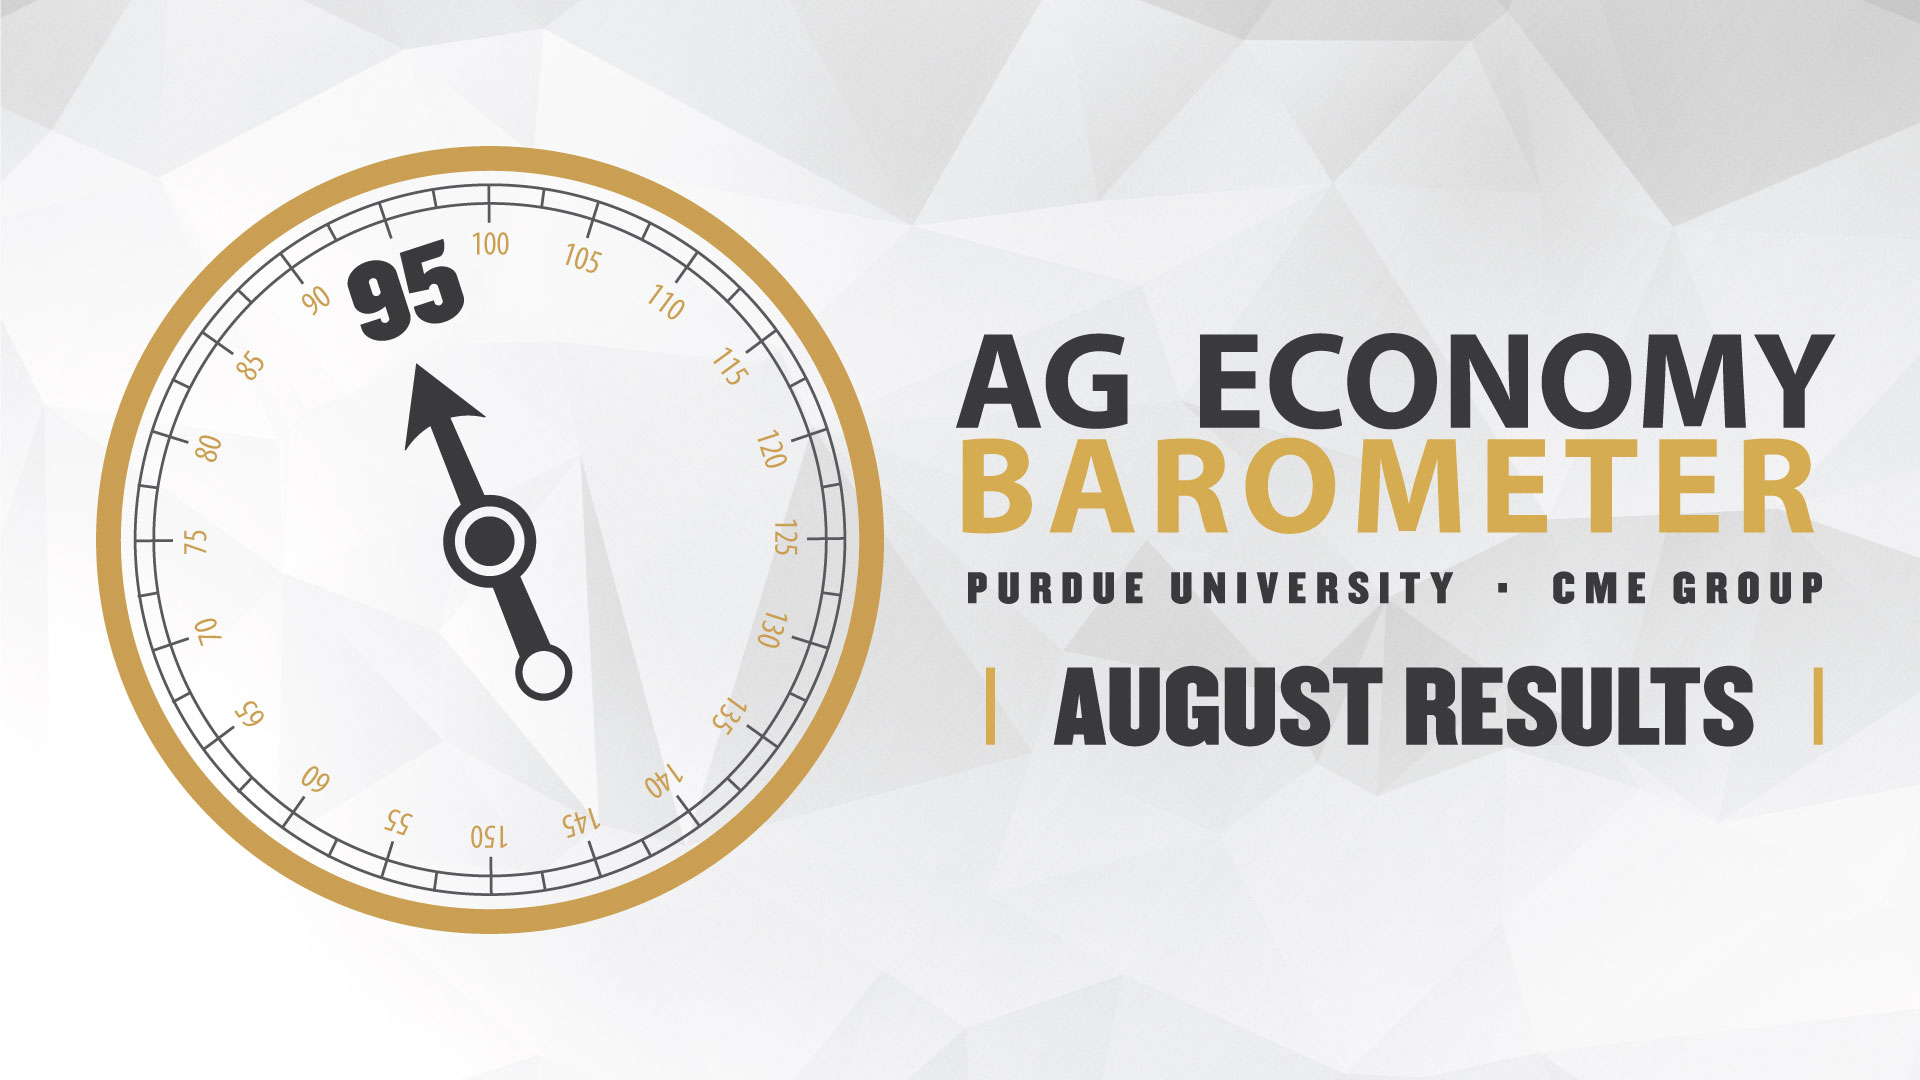 Rising Crop Prices and USDA Payment Announcements Lift Farmer Sentiment, Depsite Uncertain Economic Environment